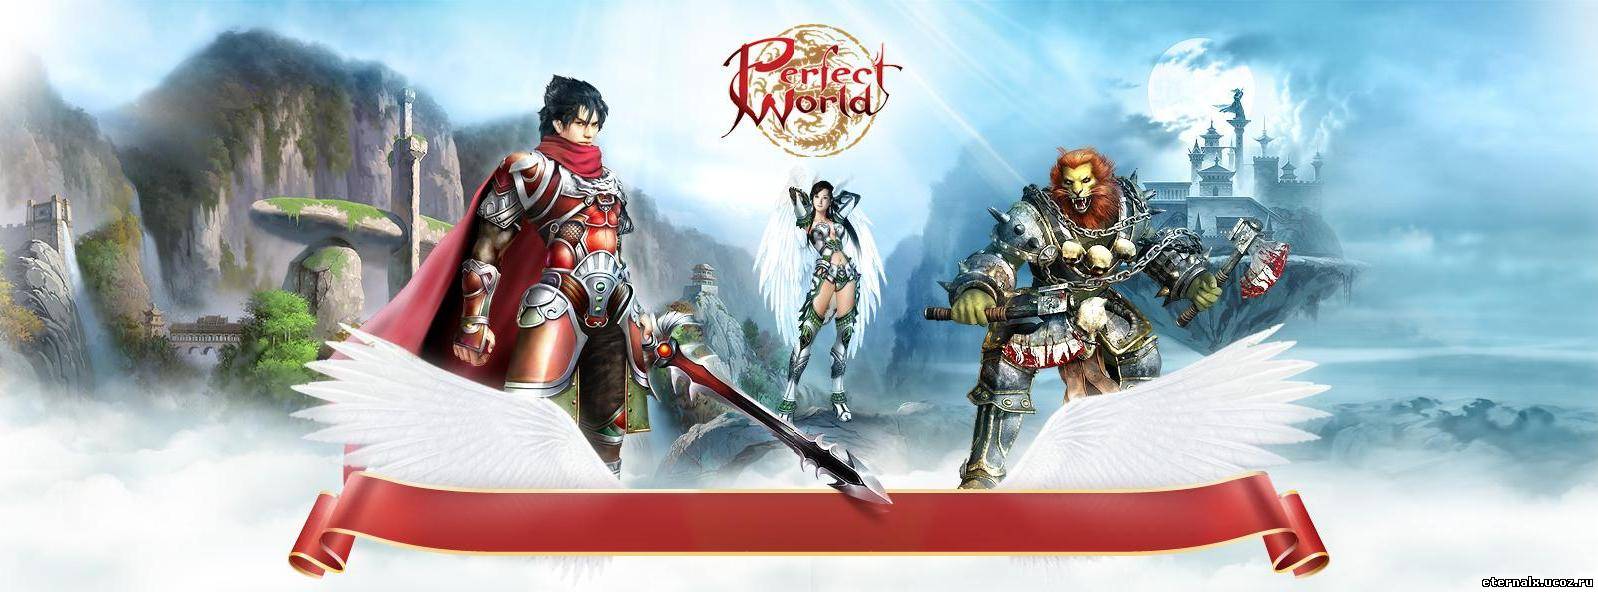 Perfect World - это новая бесплатная онлайн-игра (MMORPG), где созидательная мудрость древневосточных мифов